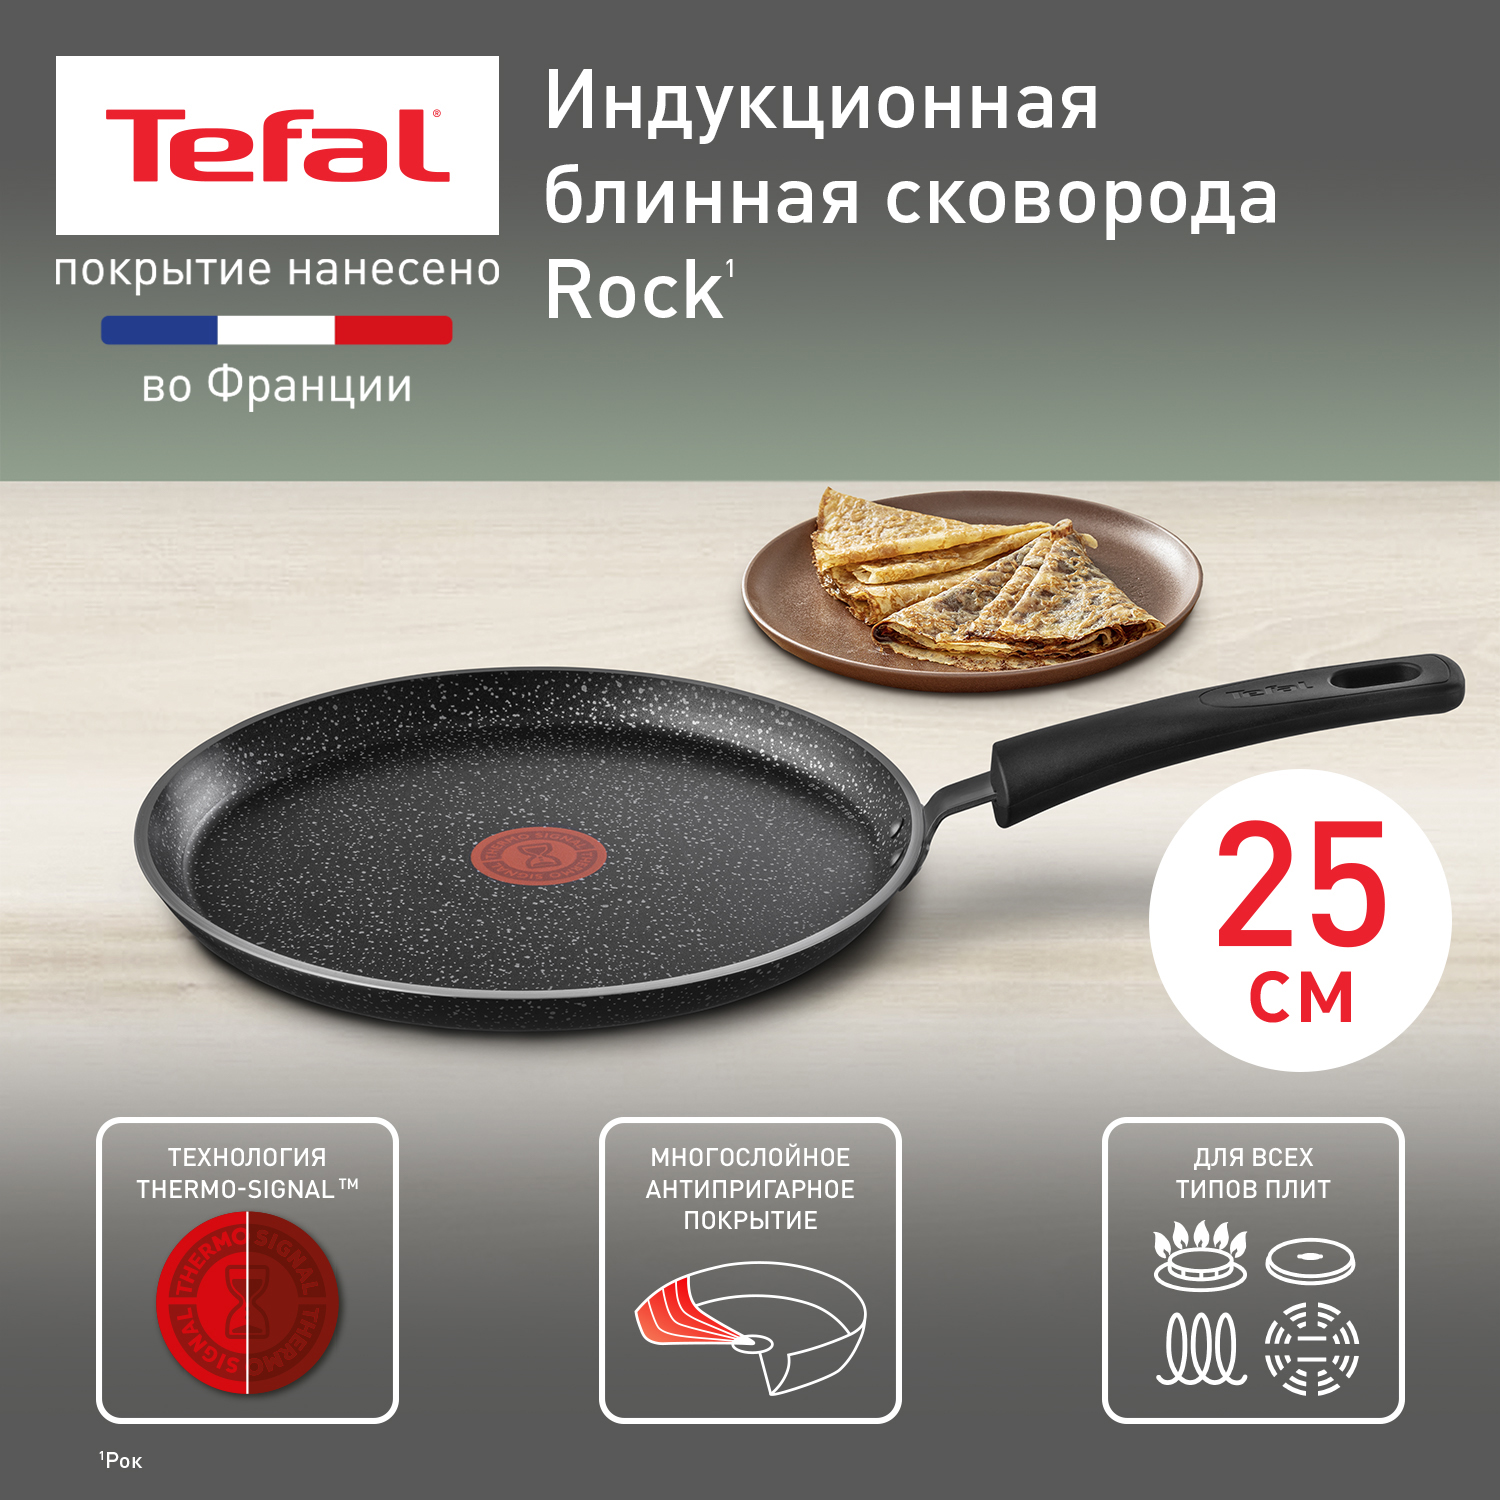 Сковорода для блинов Tefal Rock 25 cм 04225525 - купить в Официальный магазин Tefal (Иркутск), цена на Мегамаркет